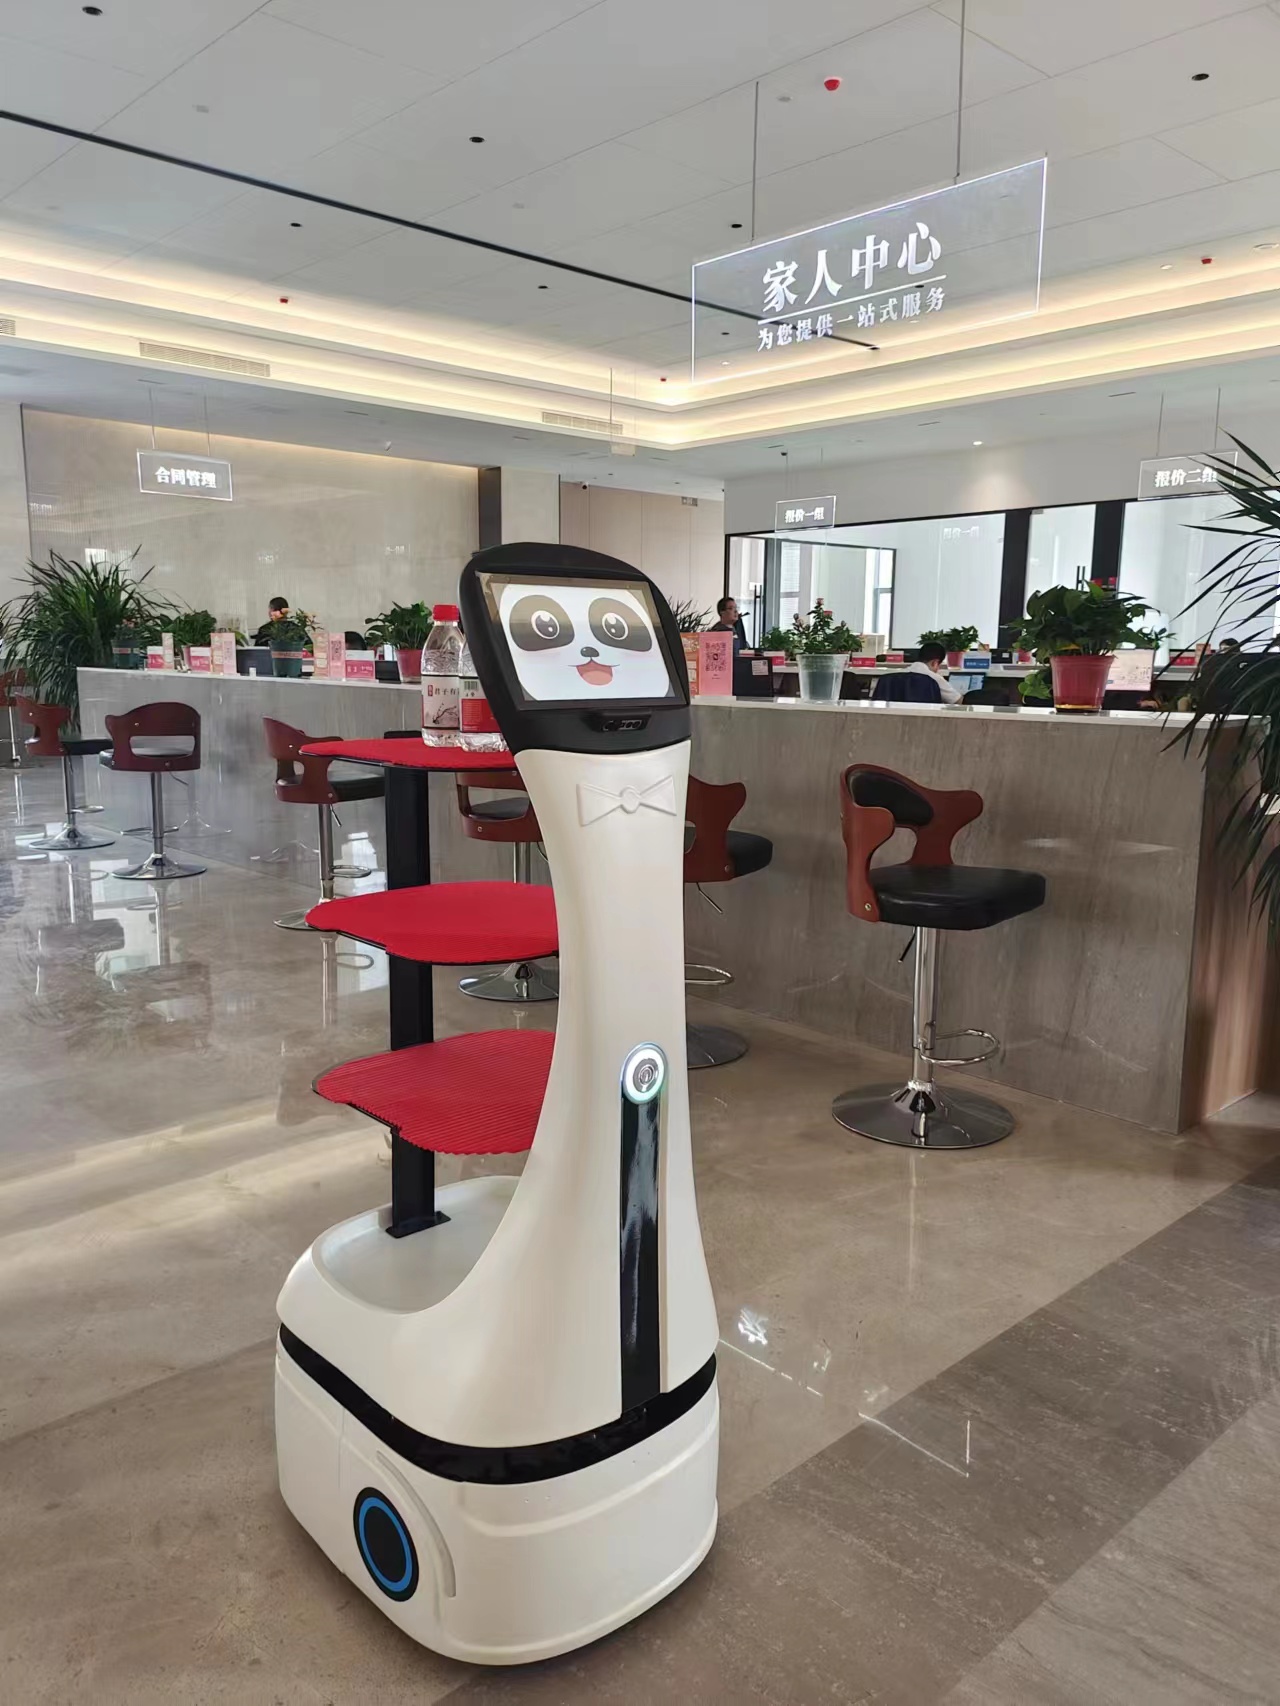 El robot repartidor panda se convierte en un “bar de agua” móvil